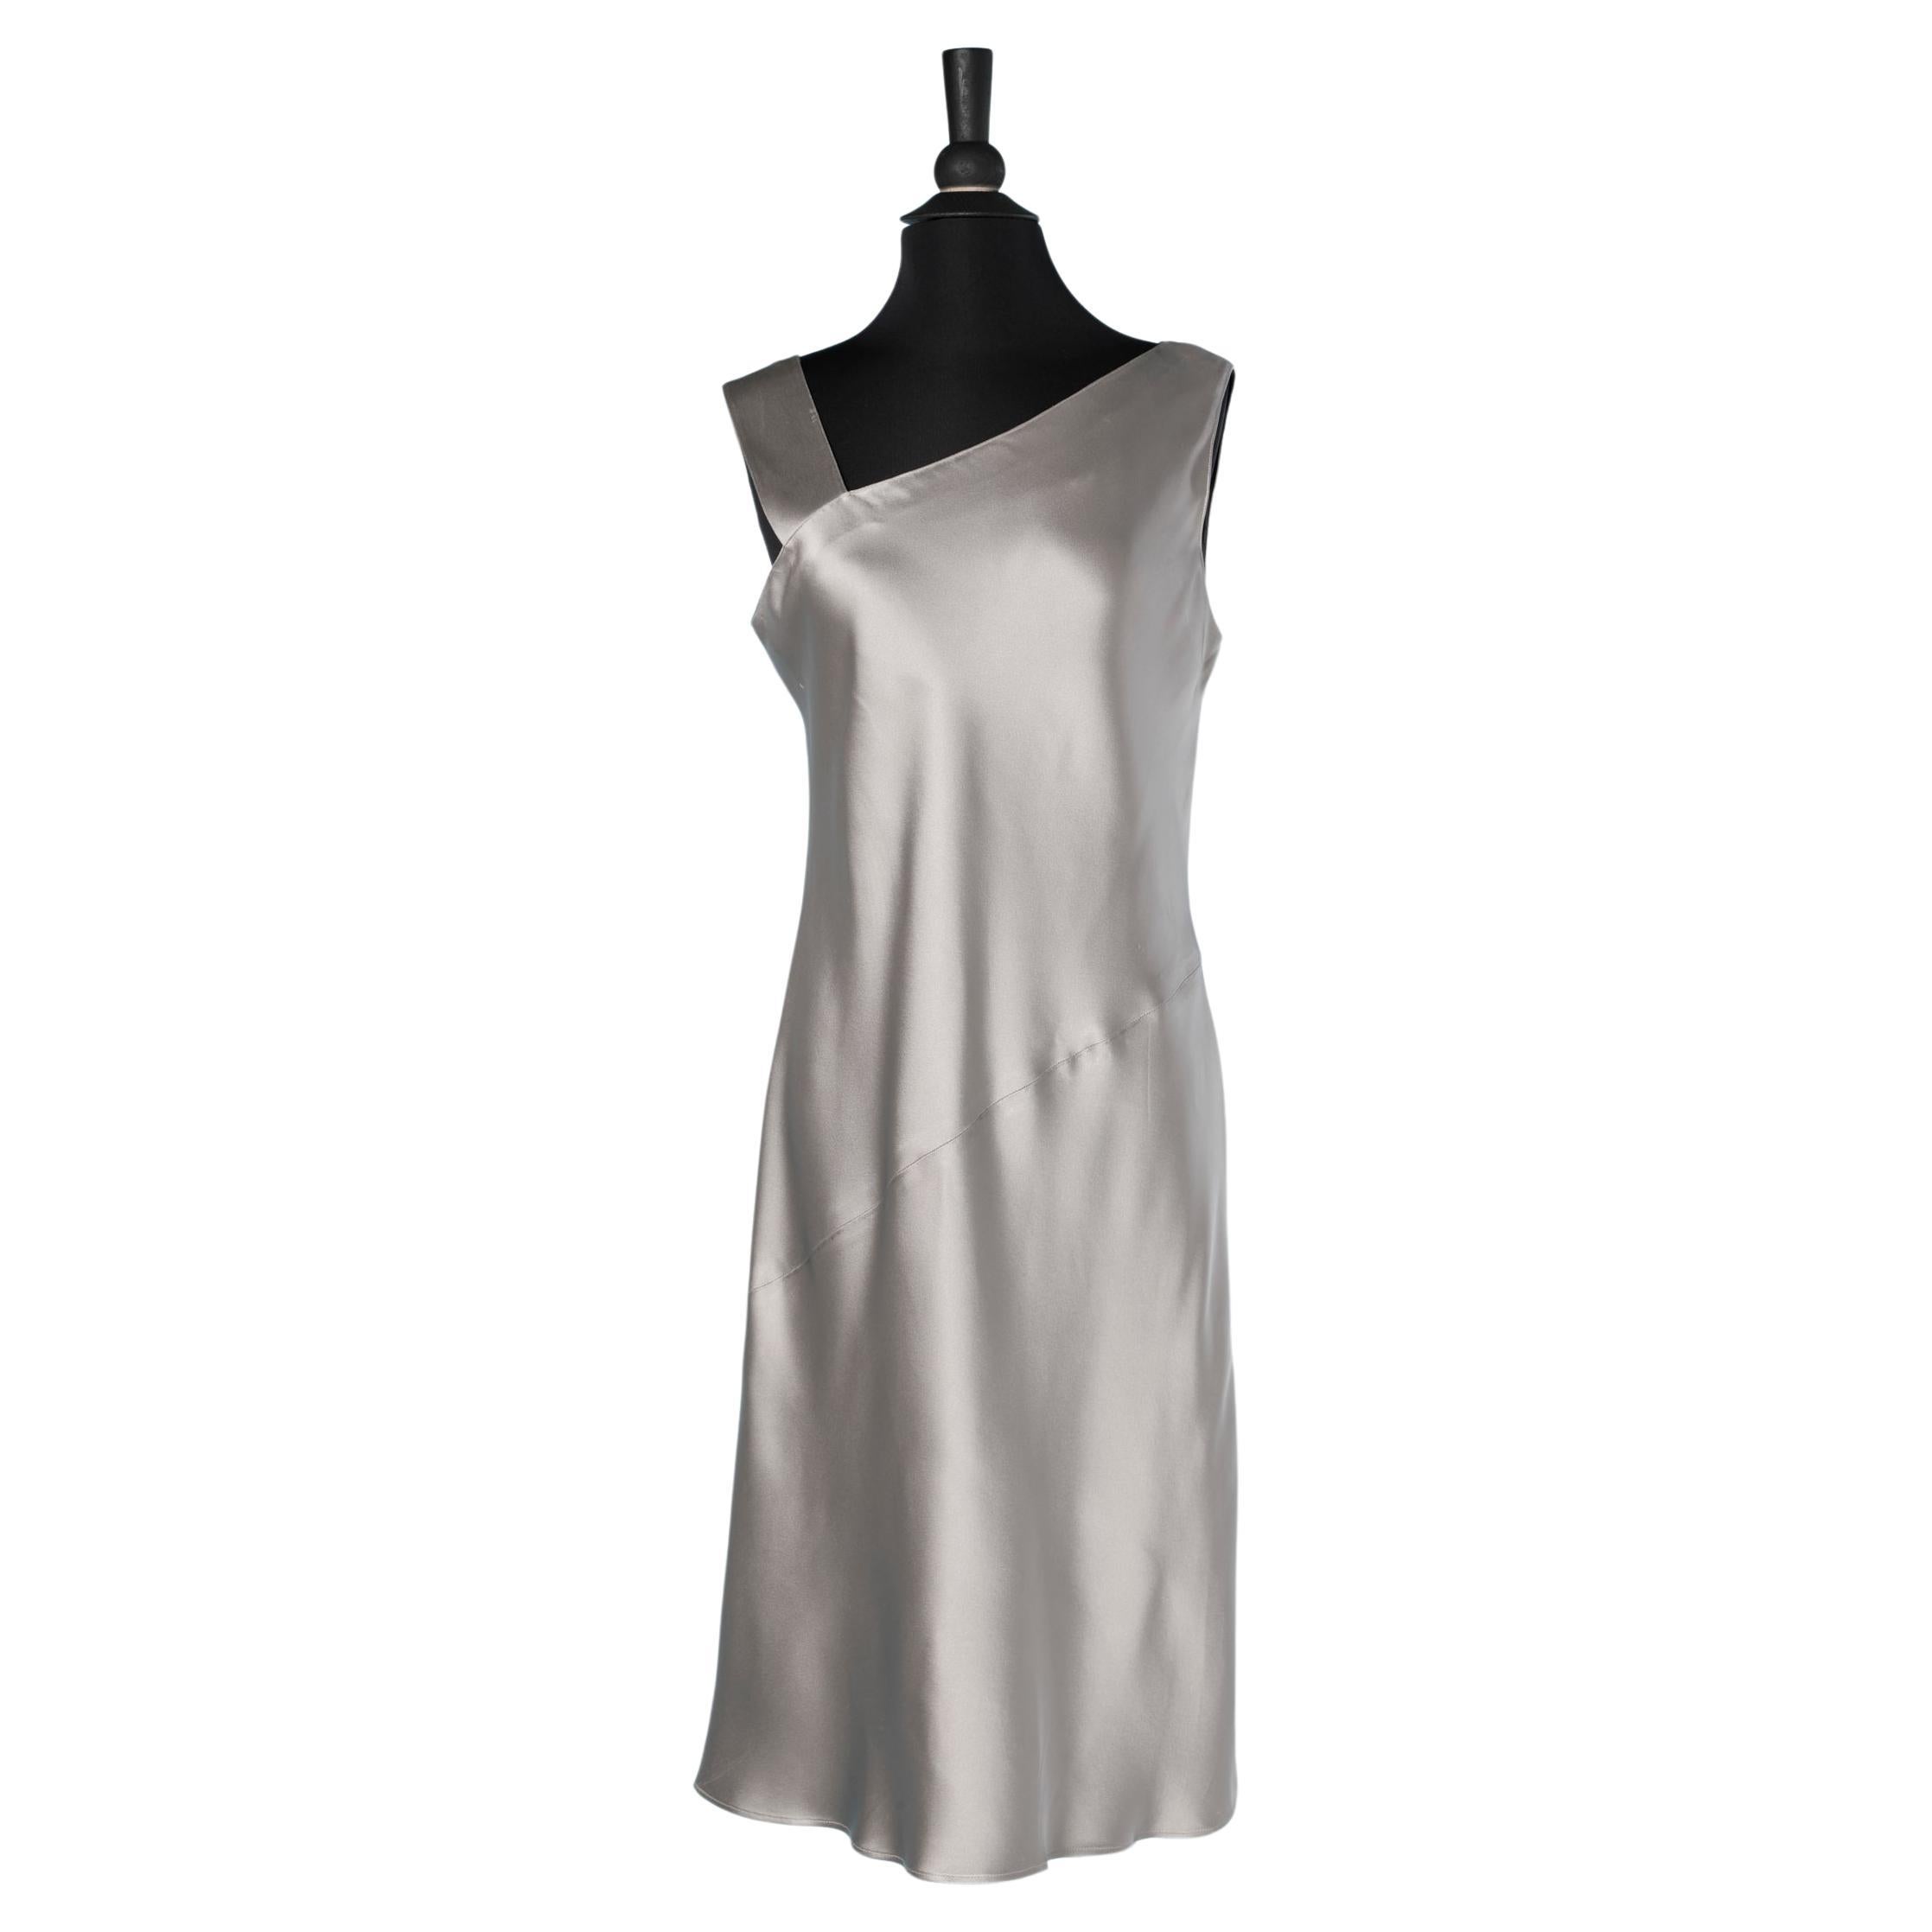 Grey satin sleeveless cocktail dress Emanuel/ Emmanuel Ungaro  For Sale